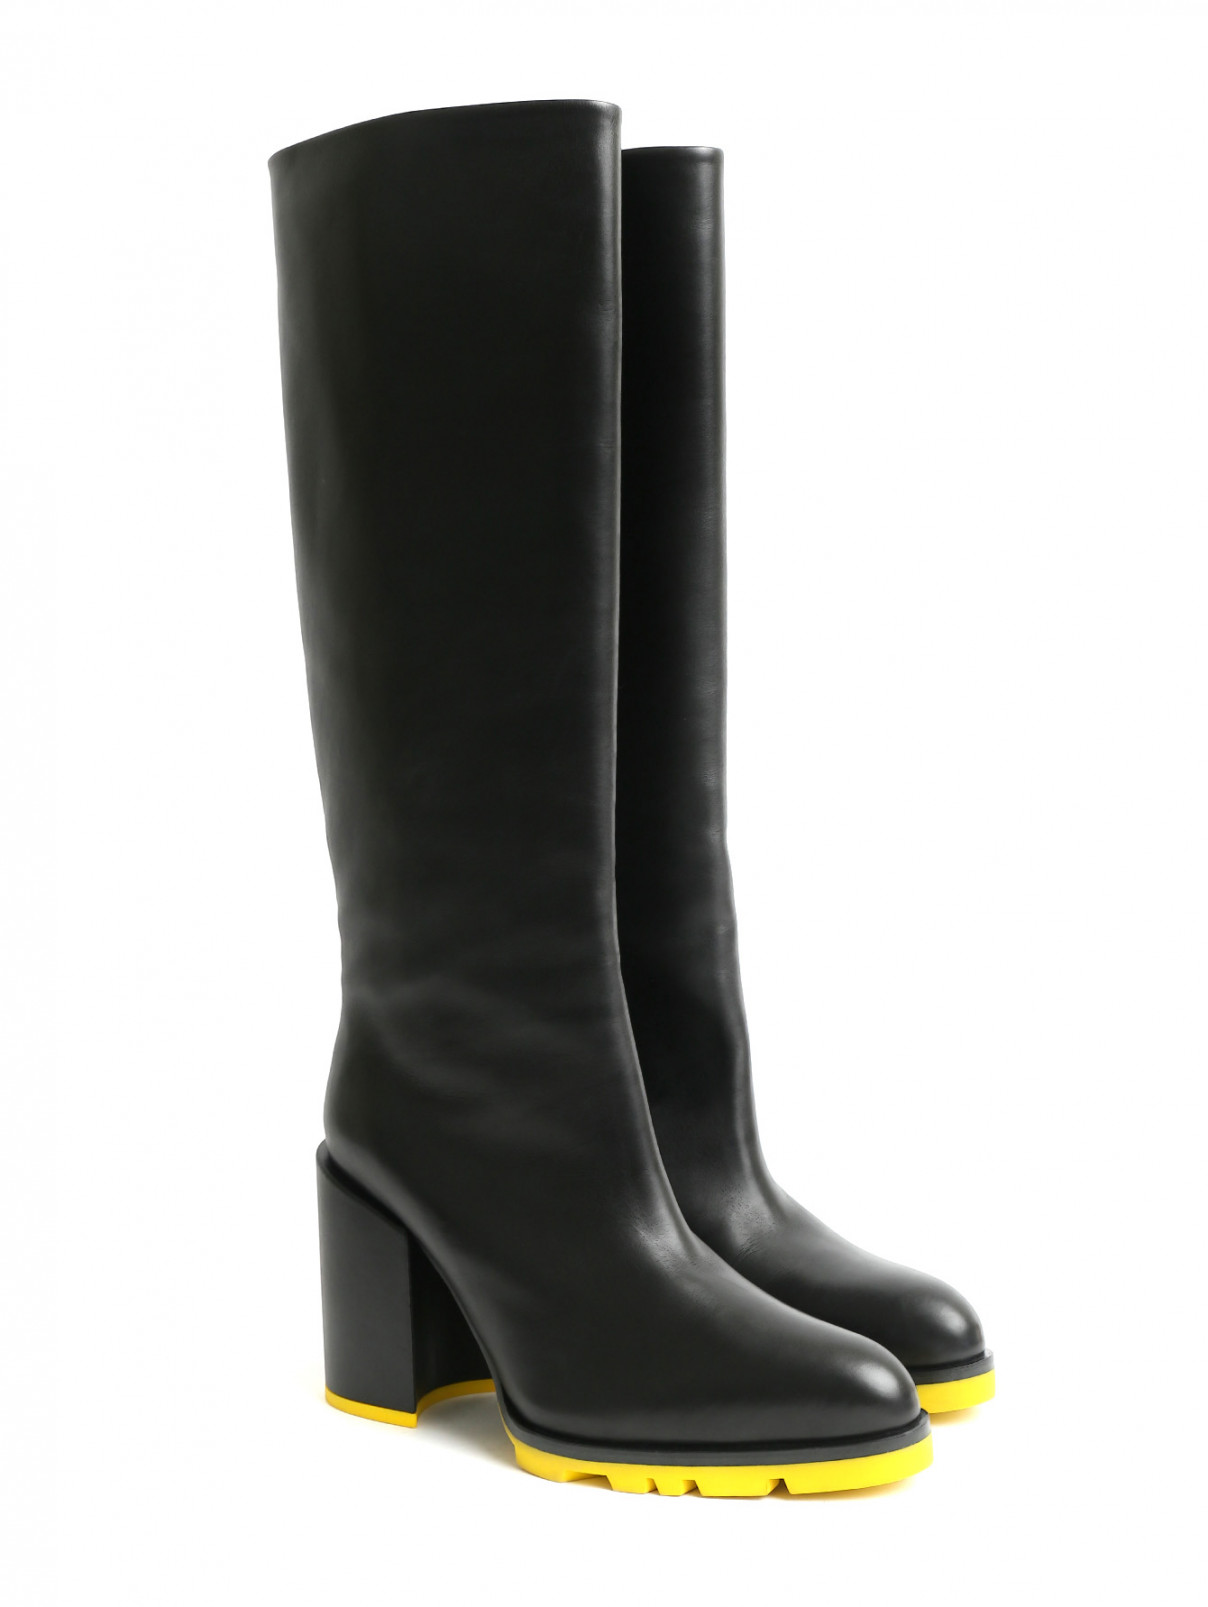 Сапоги на устойчивом каблуке с контрастной подошвой Jil Sander  –  Общий вид  – Цвет:  Черный